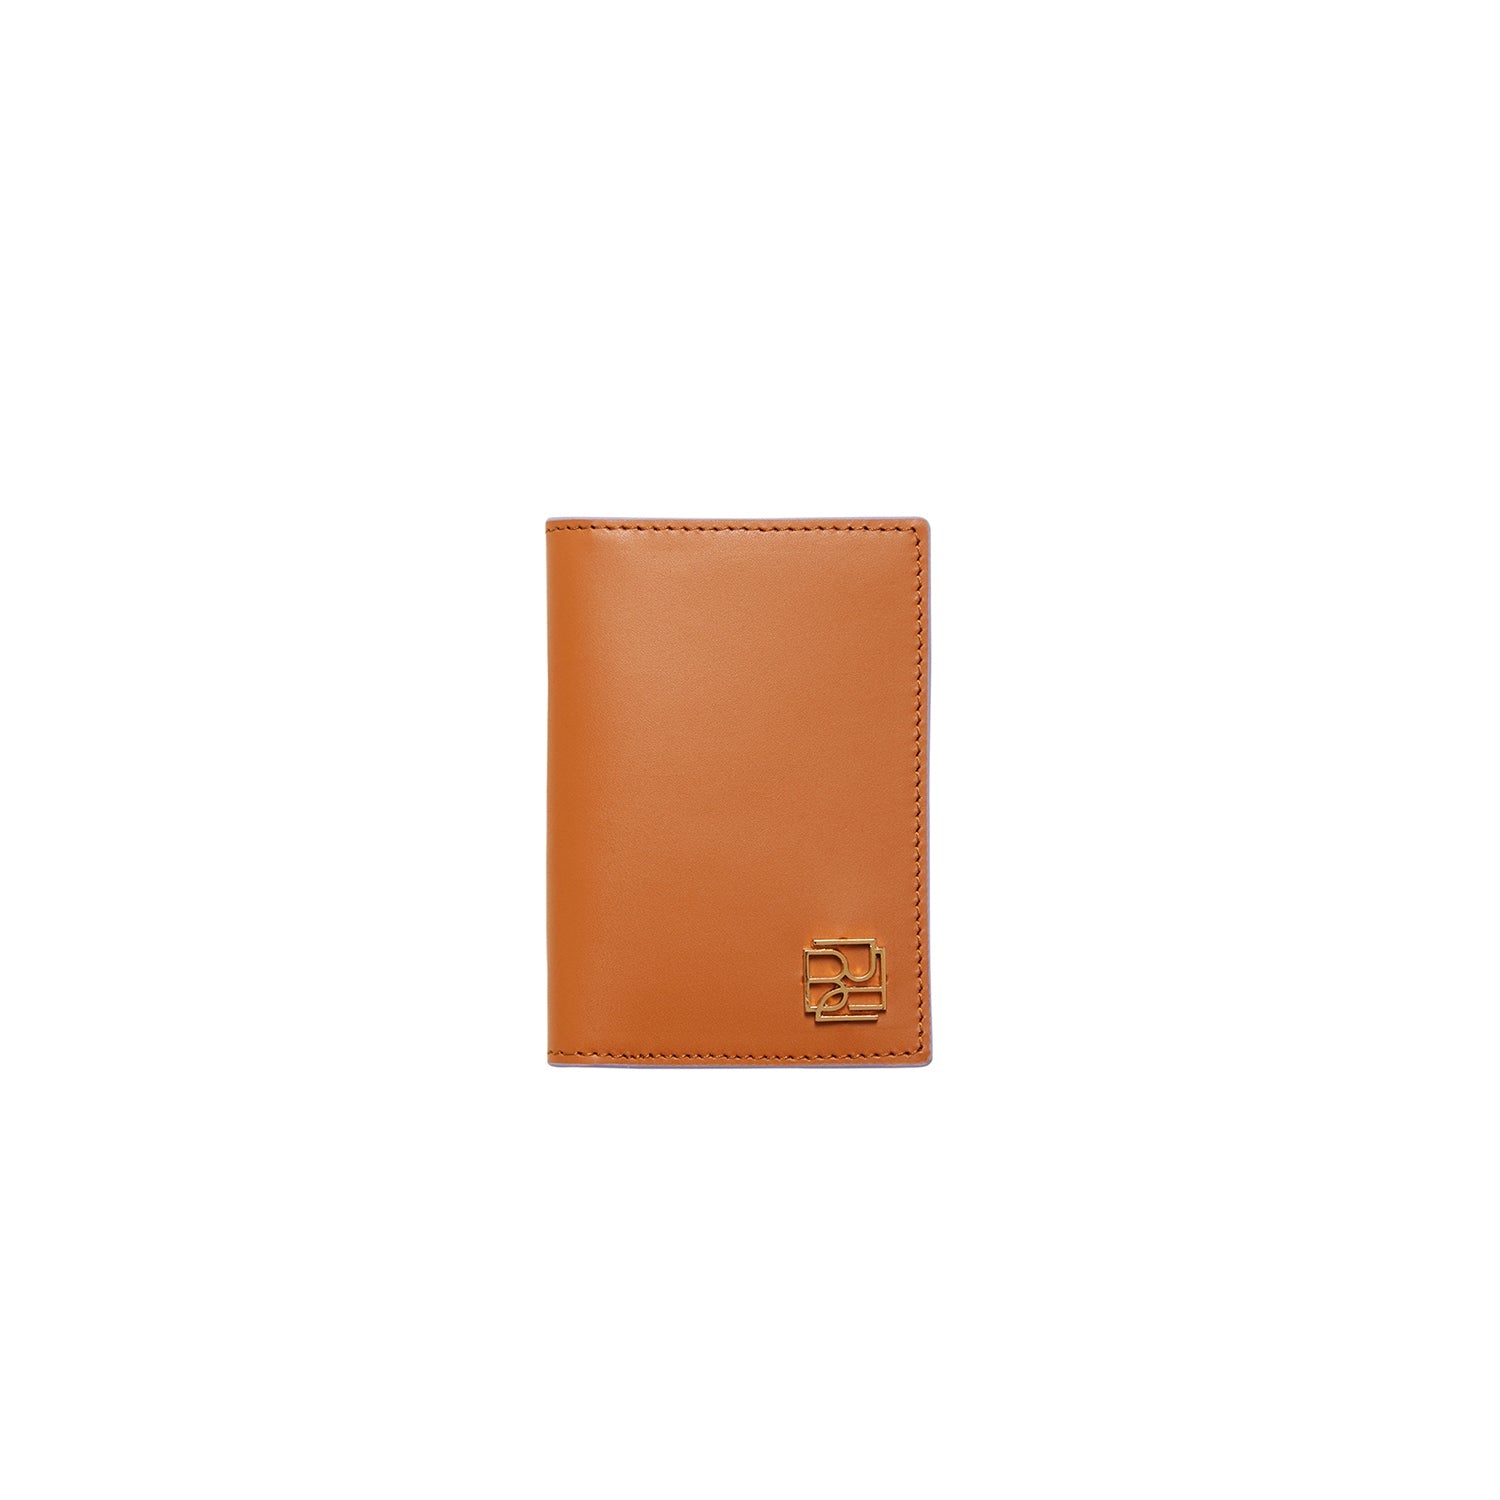 Card Case Caramel - Bera Design